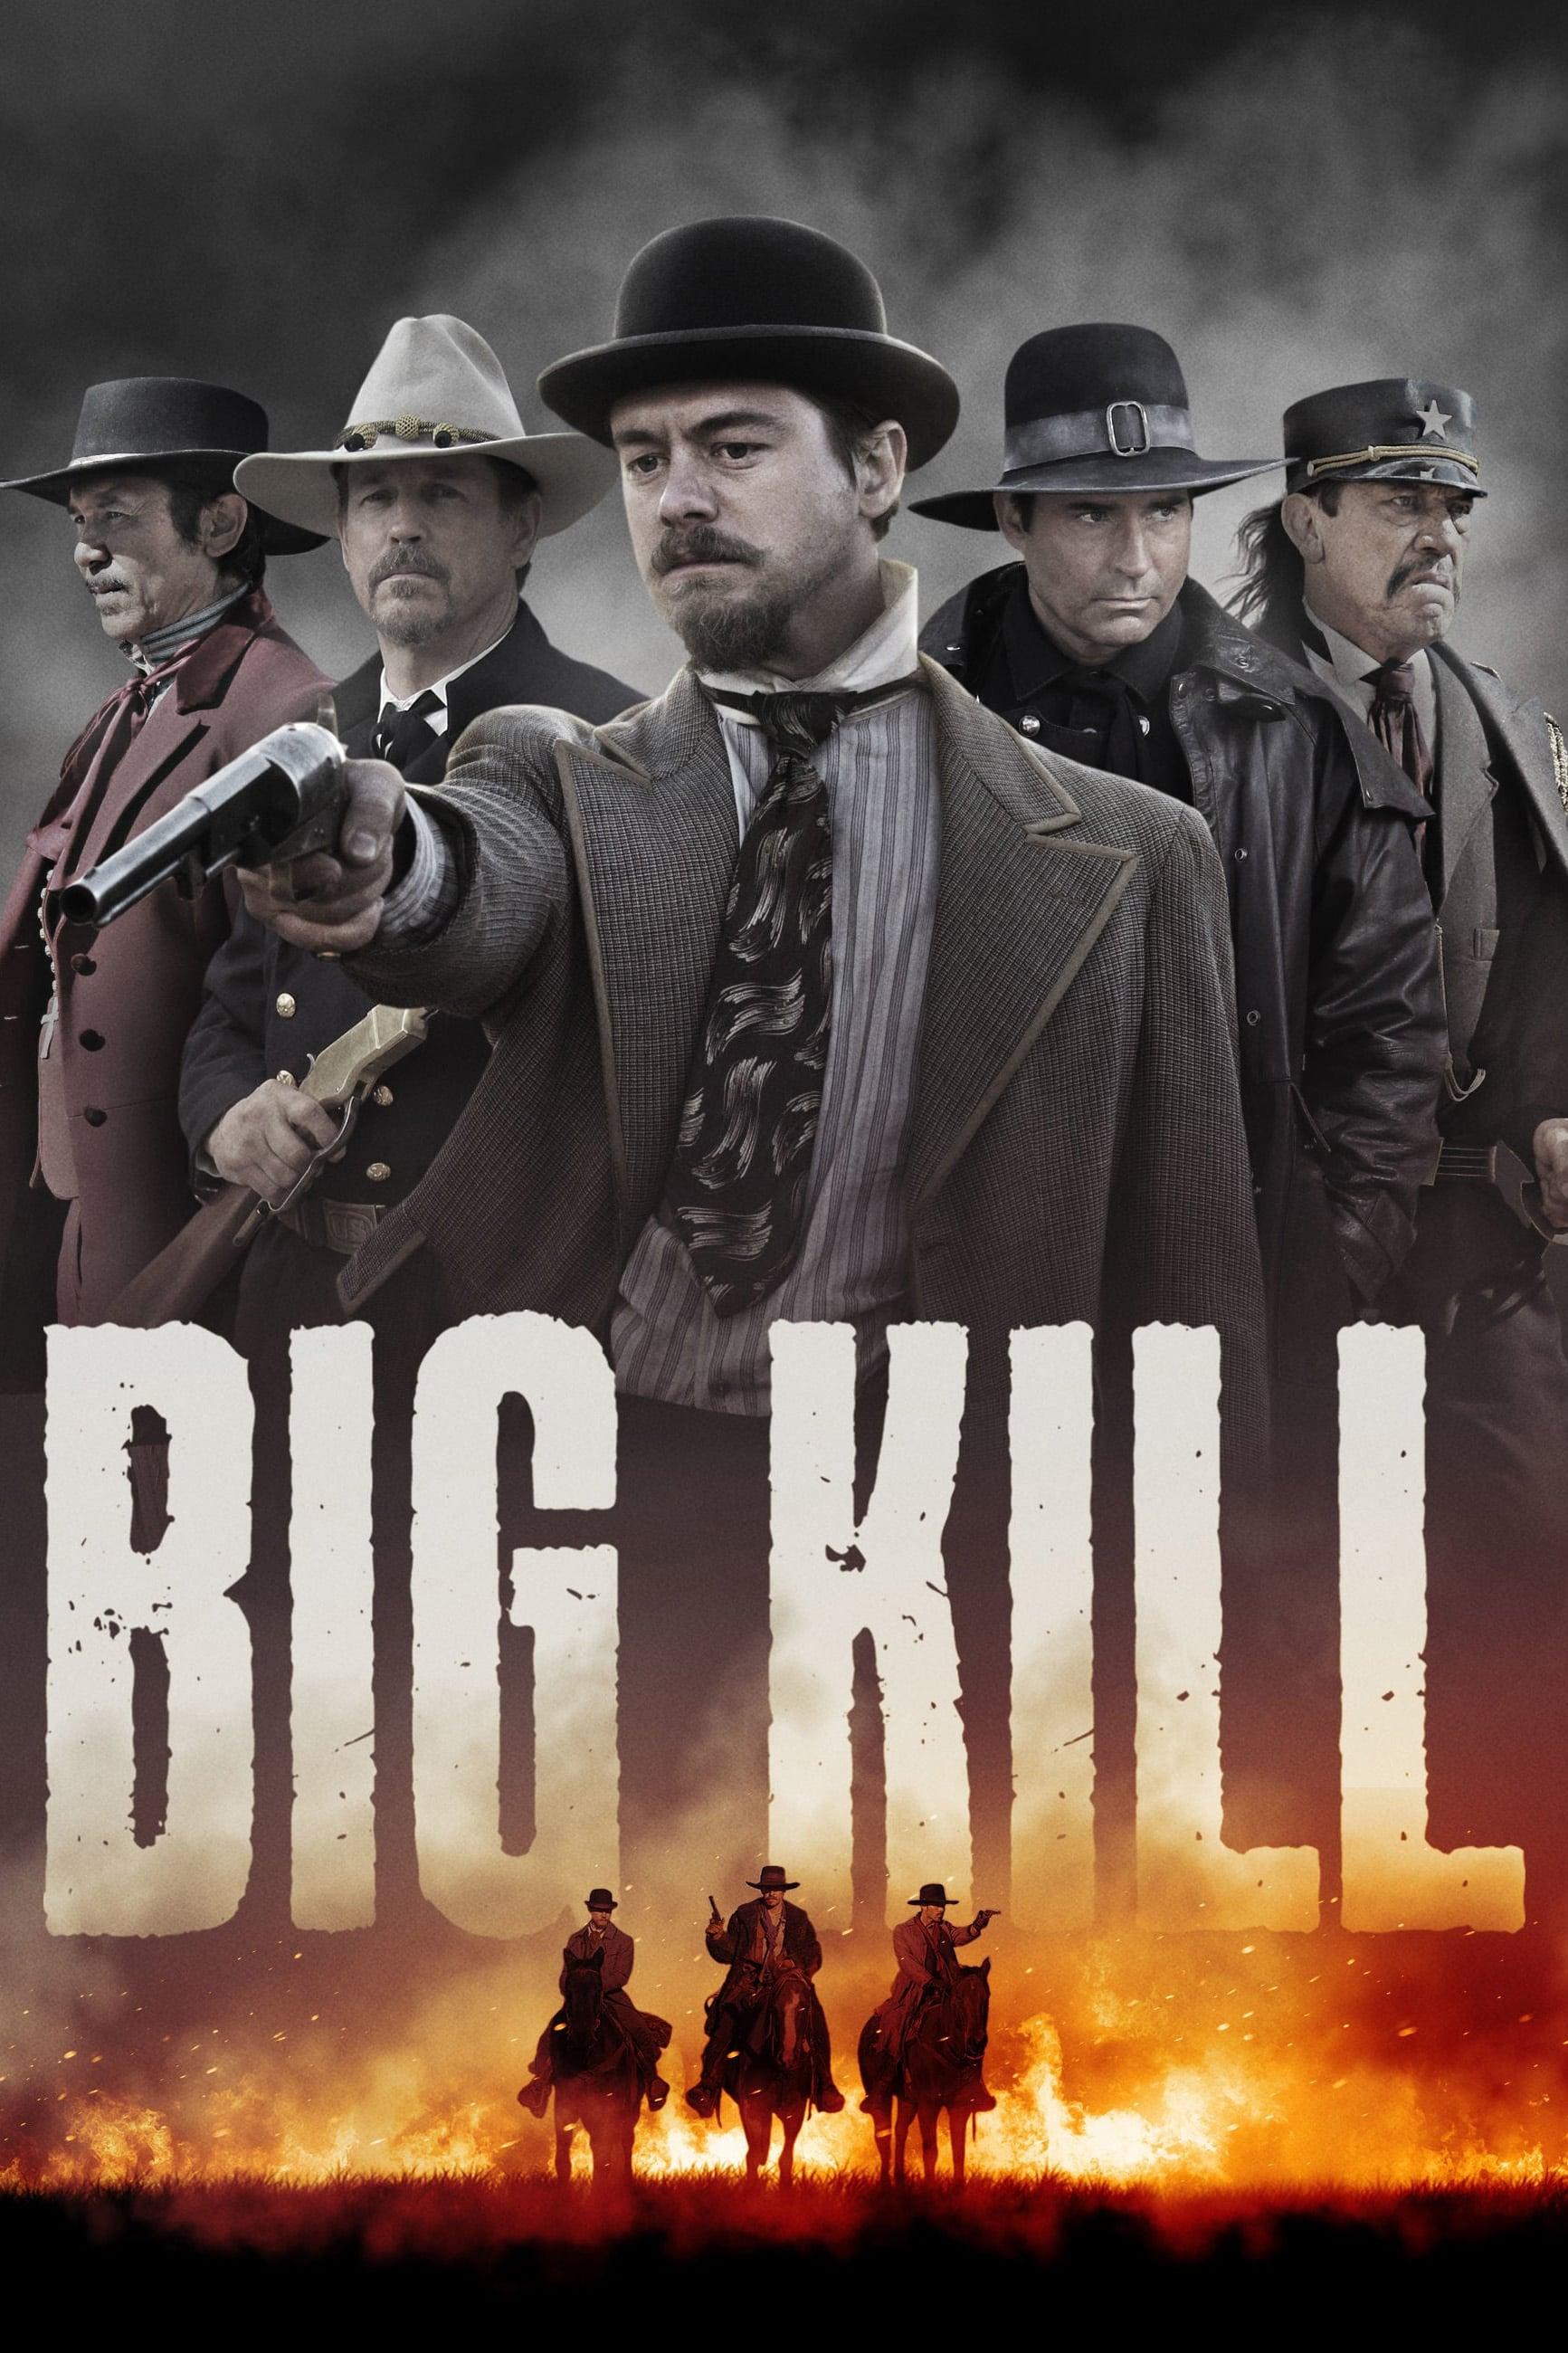 Big Kill poster